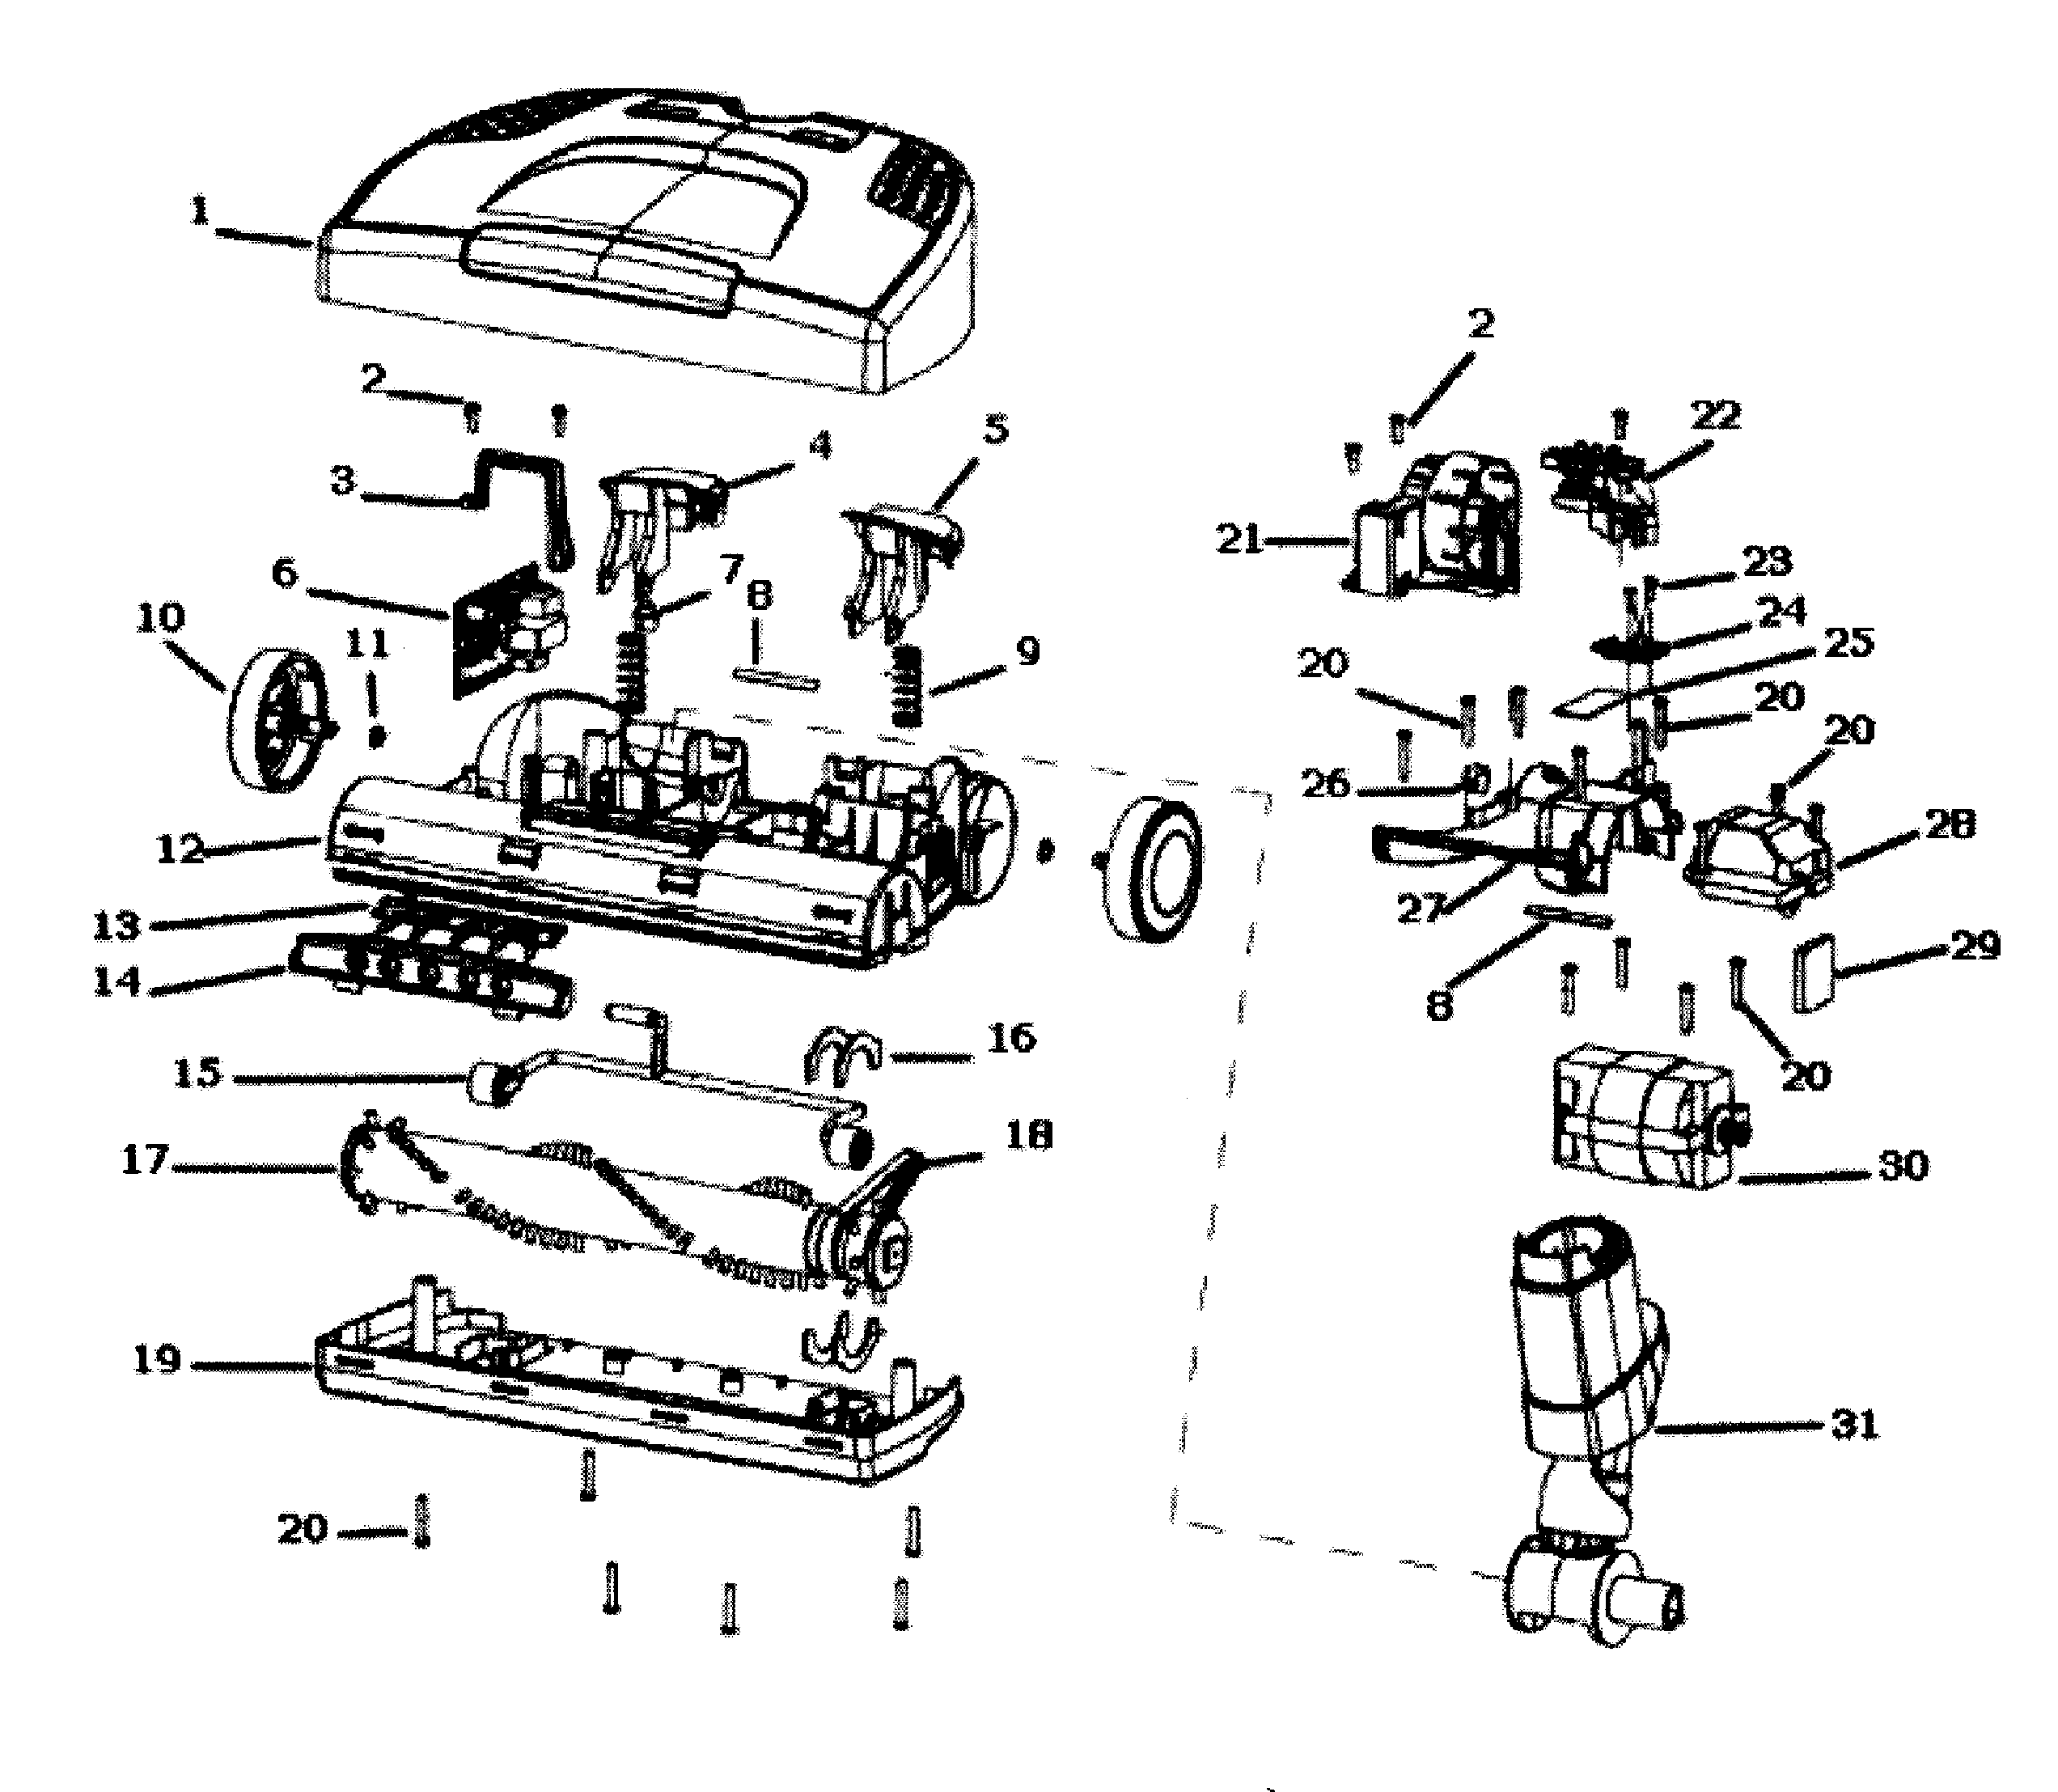 Electrolux Canister Vacuum Parts Diagram Derslatnaback